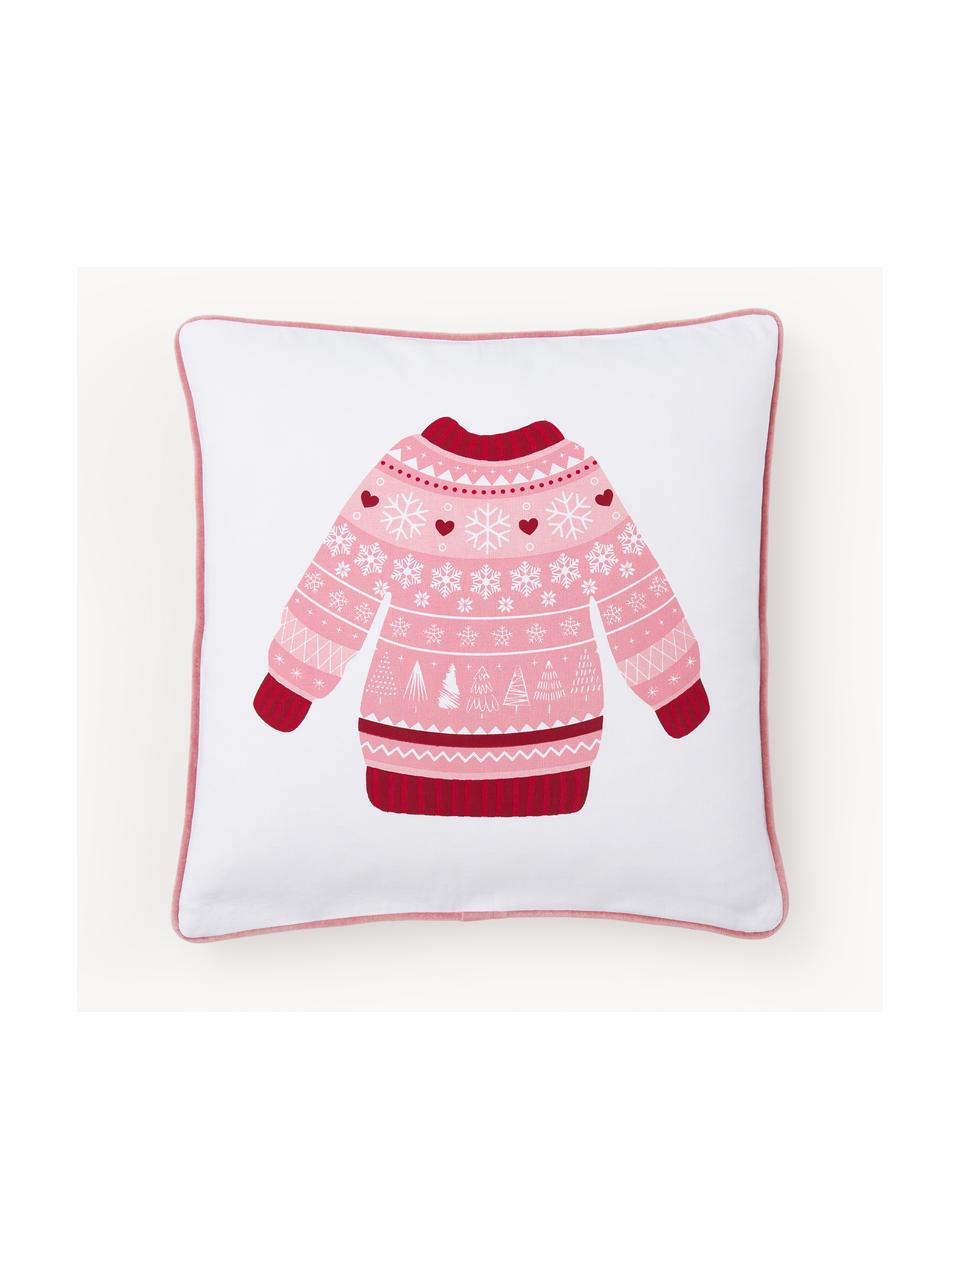 Dubbelzijdige kussenhoes Sweater met winters motief, Bekleding: 100% katoen, Wit, rood, oudroze, B 45 x L 45 cm